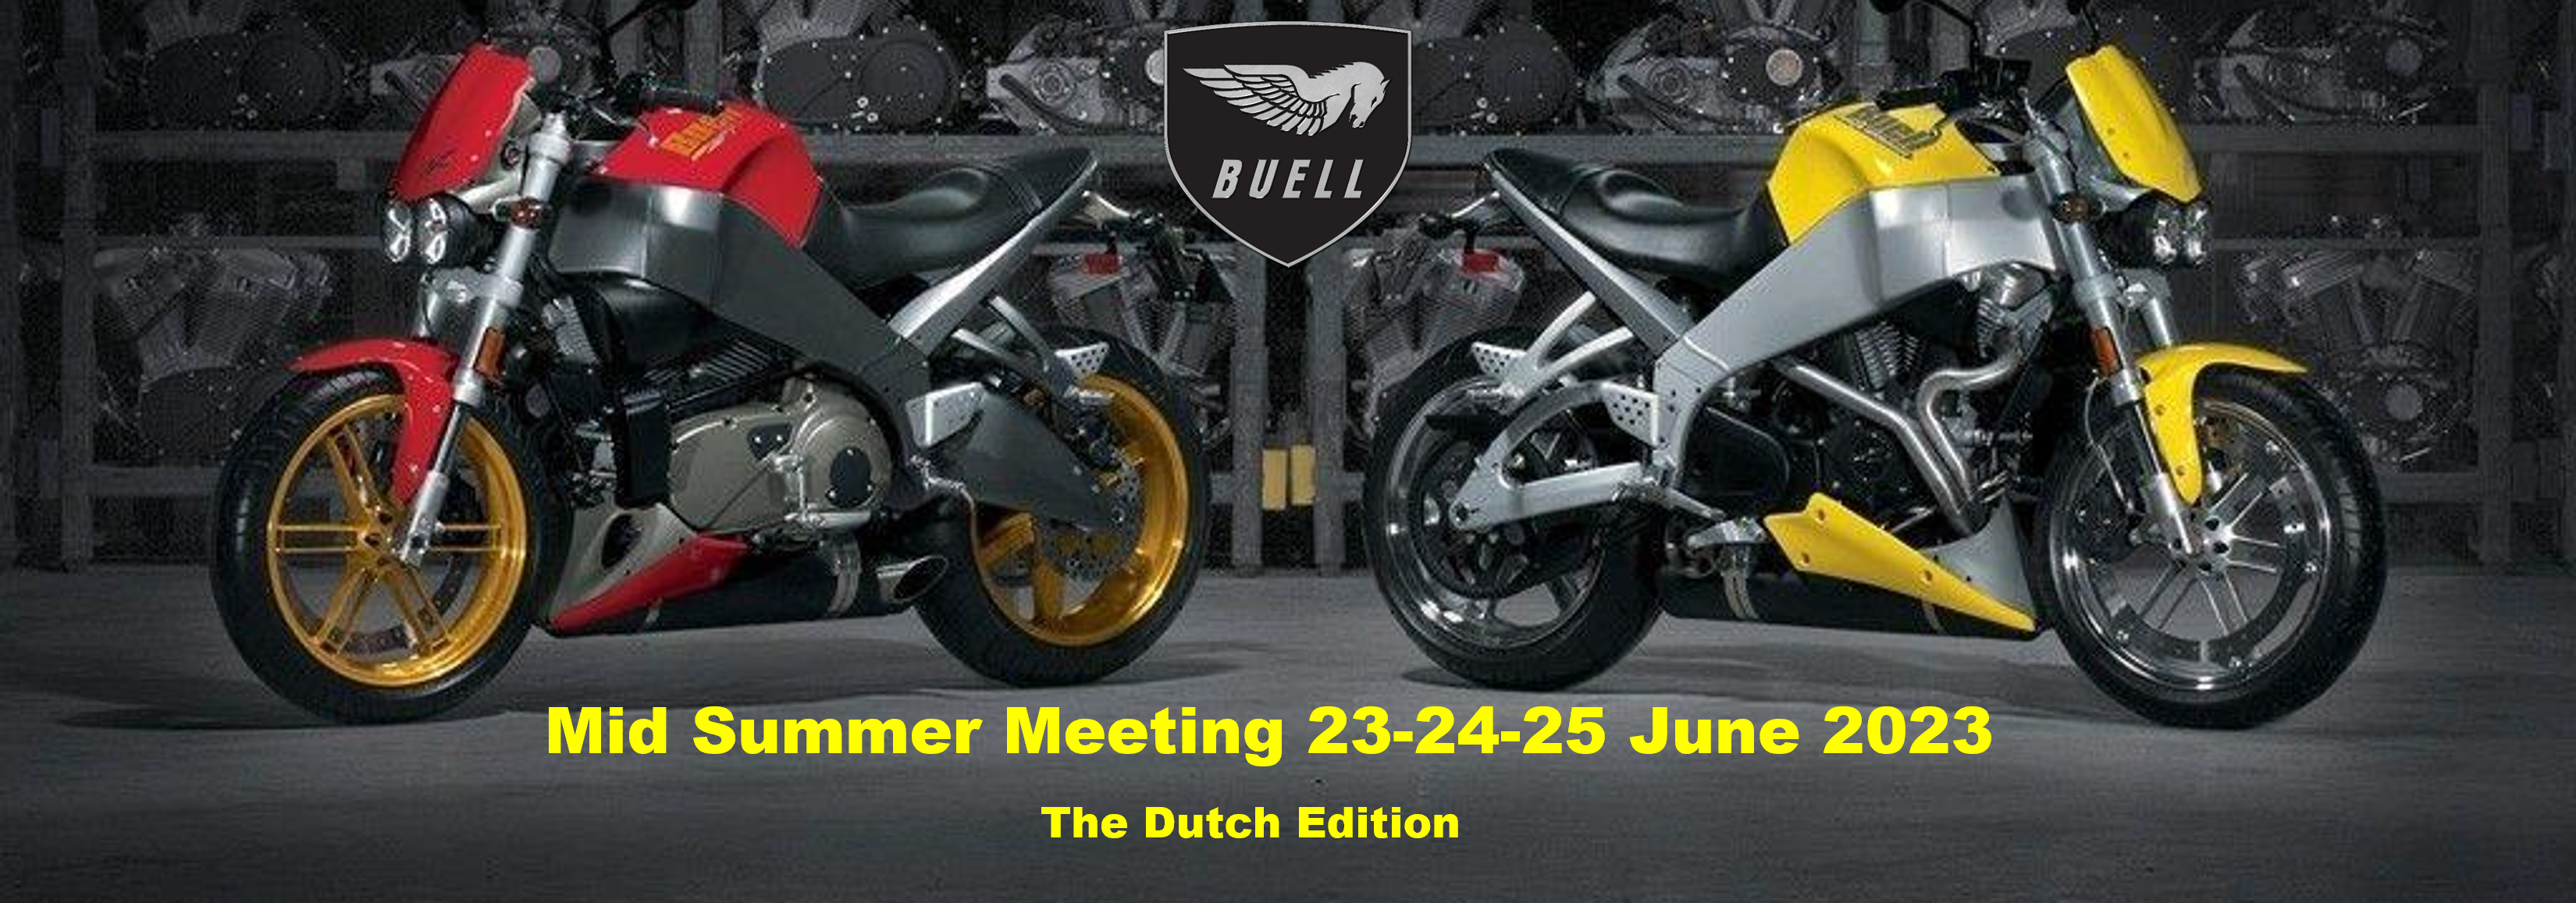 Buell Mid Summer Meeting 2023